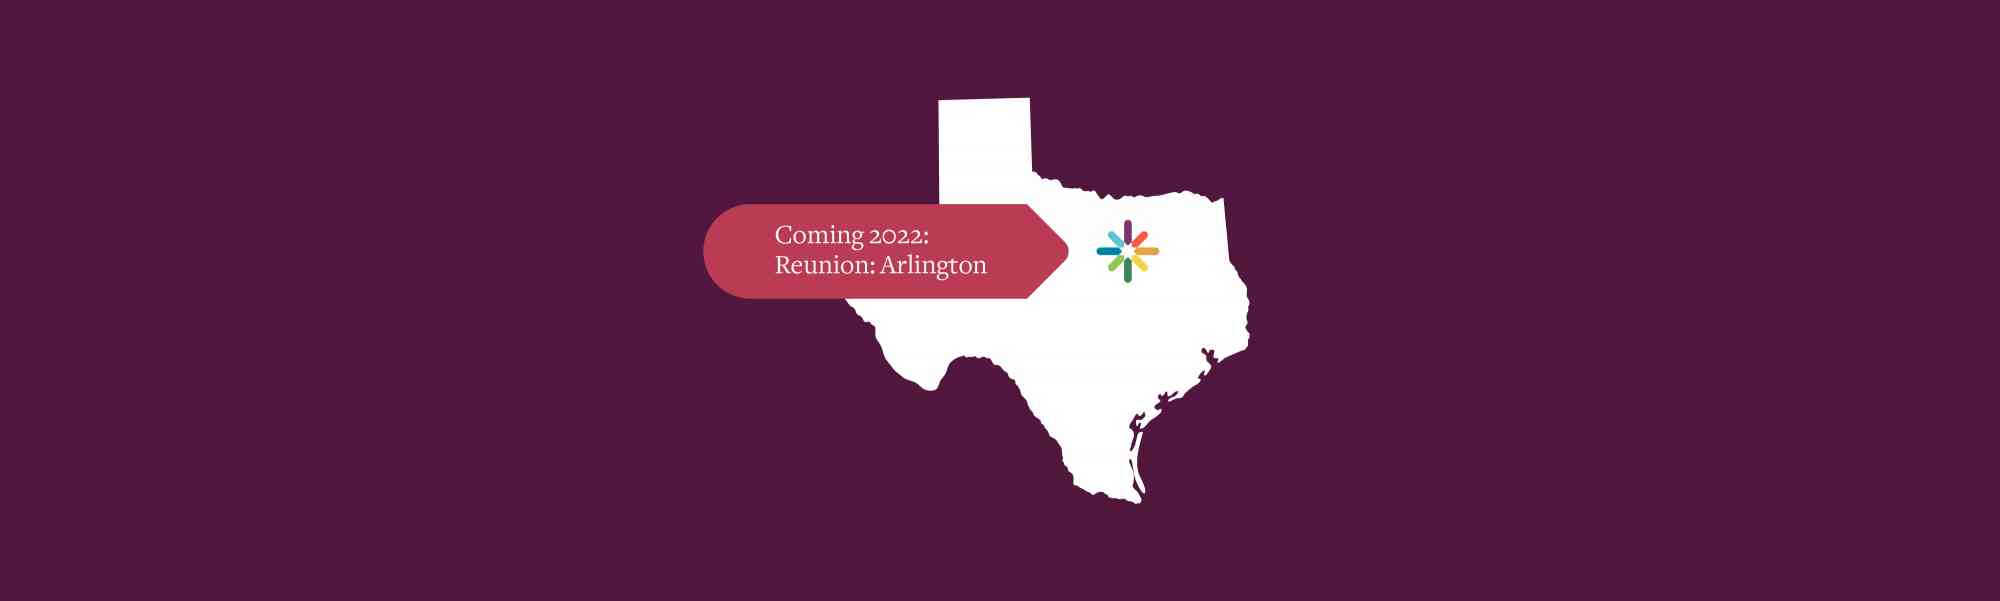 Coming 2022 — Reunion: Arlington